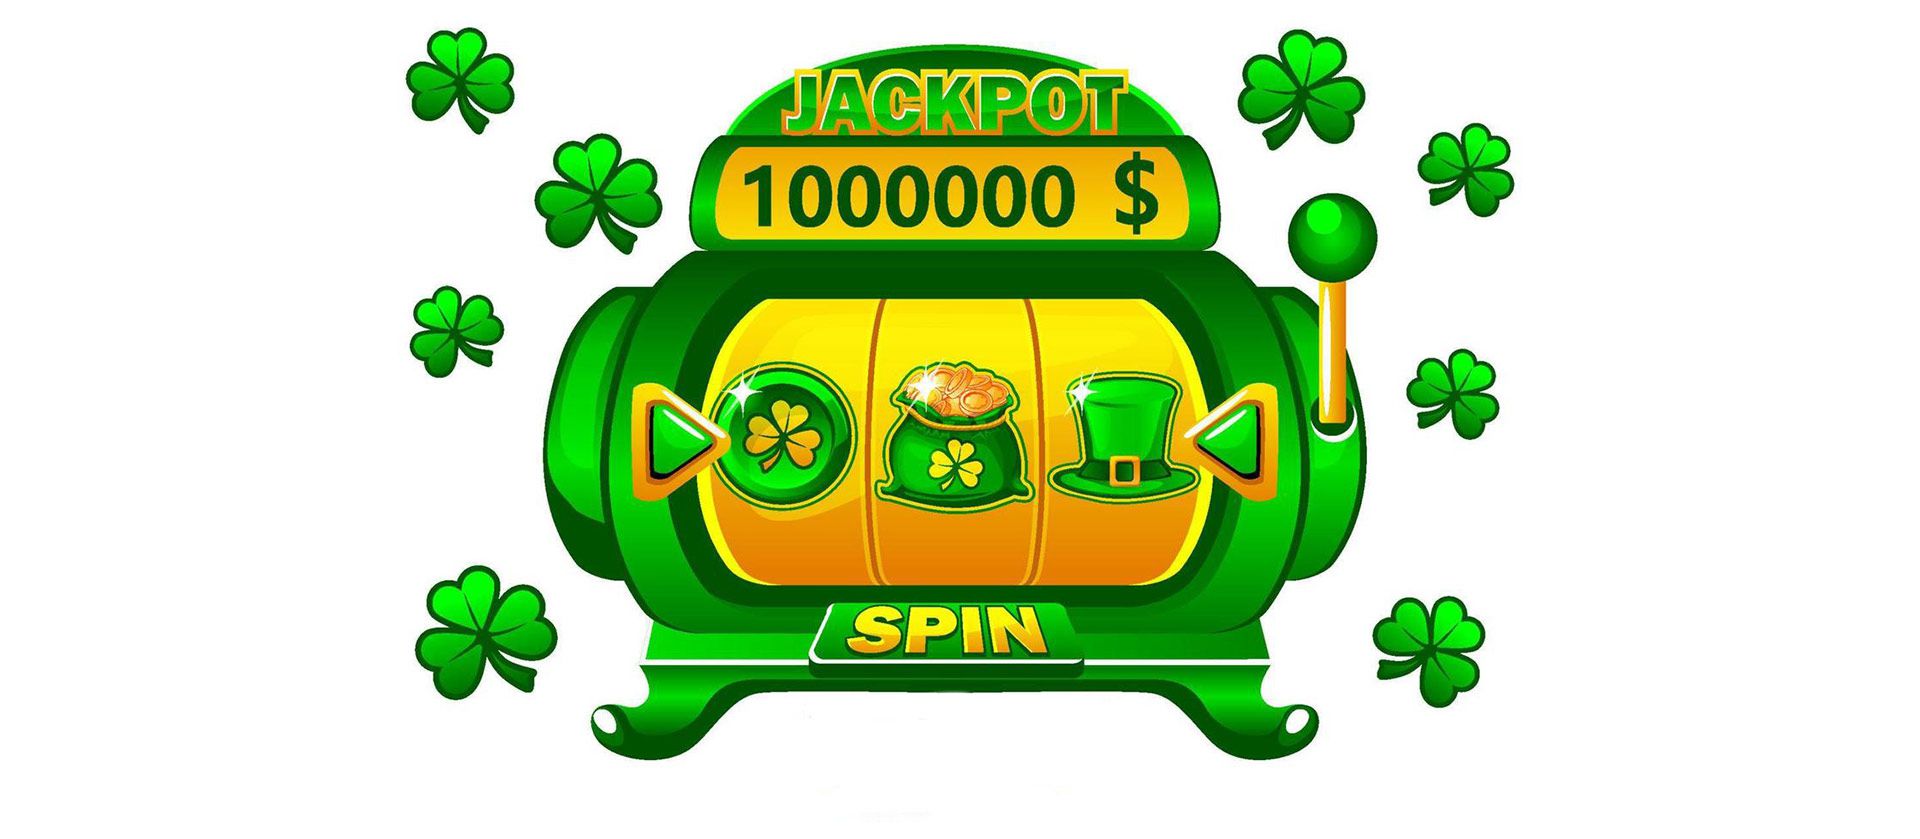 Casino bonuses in Ireland online casinos.